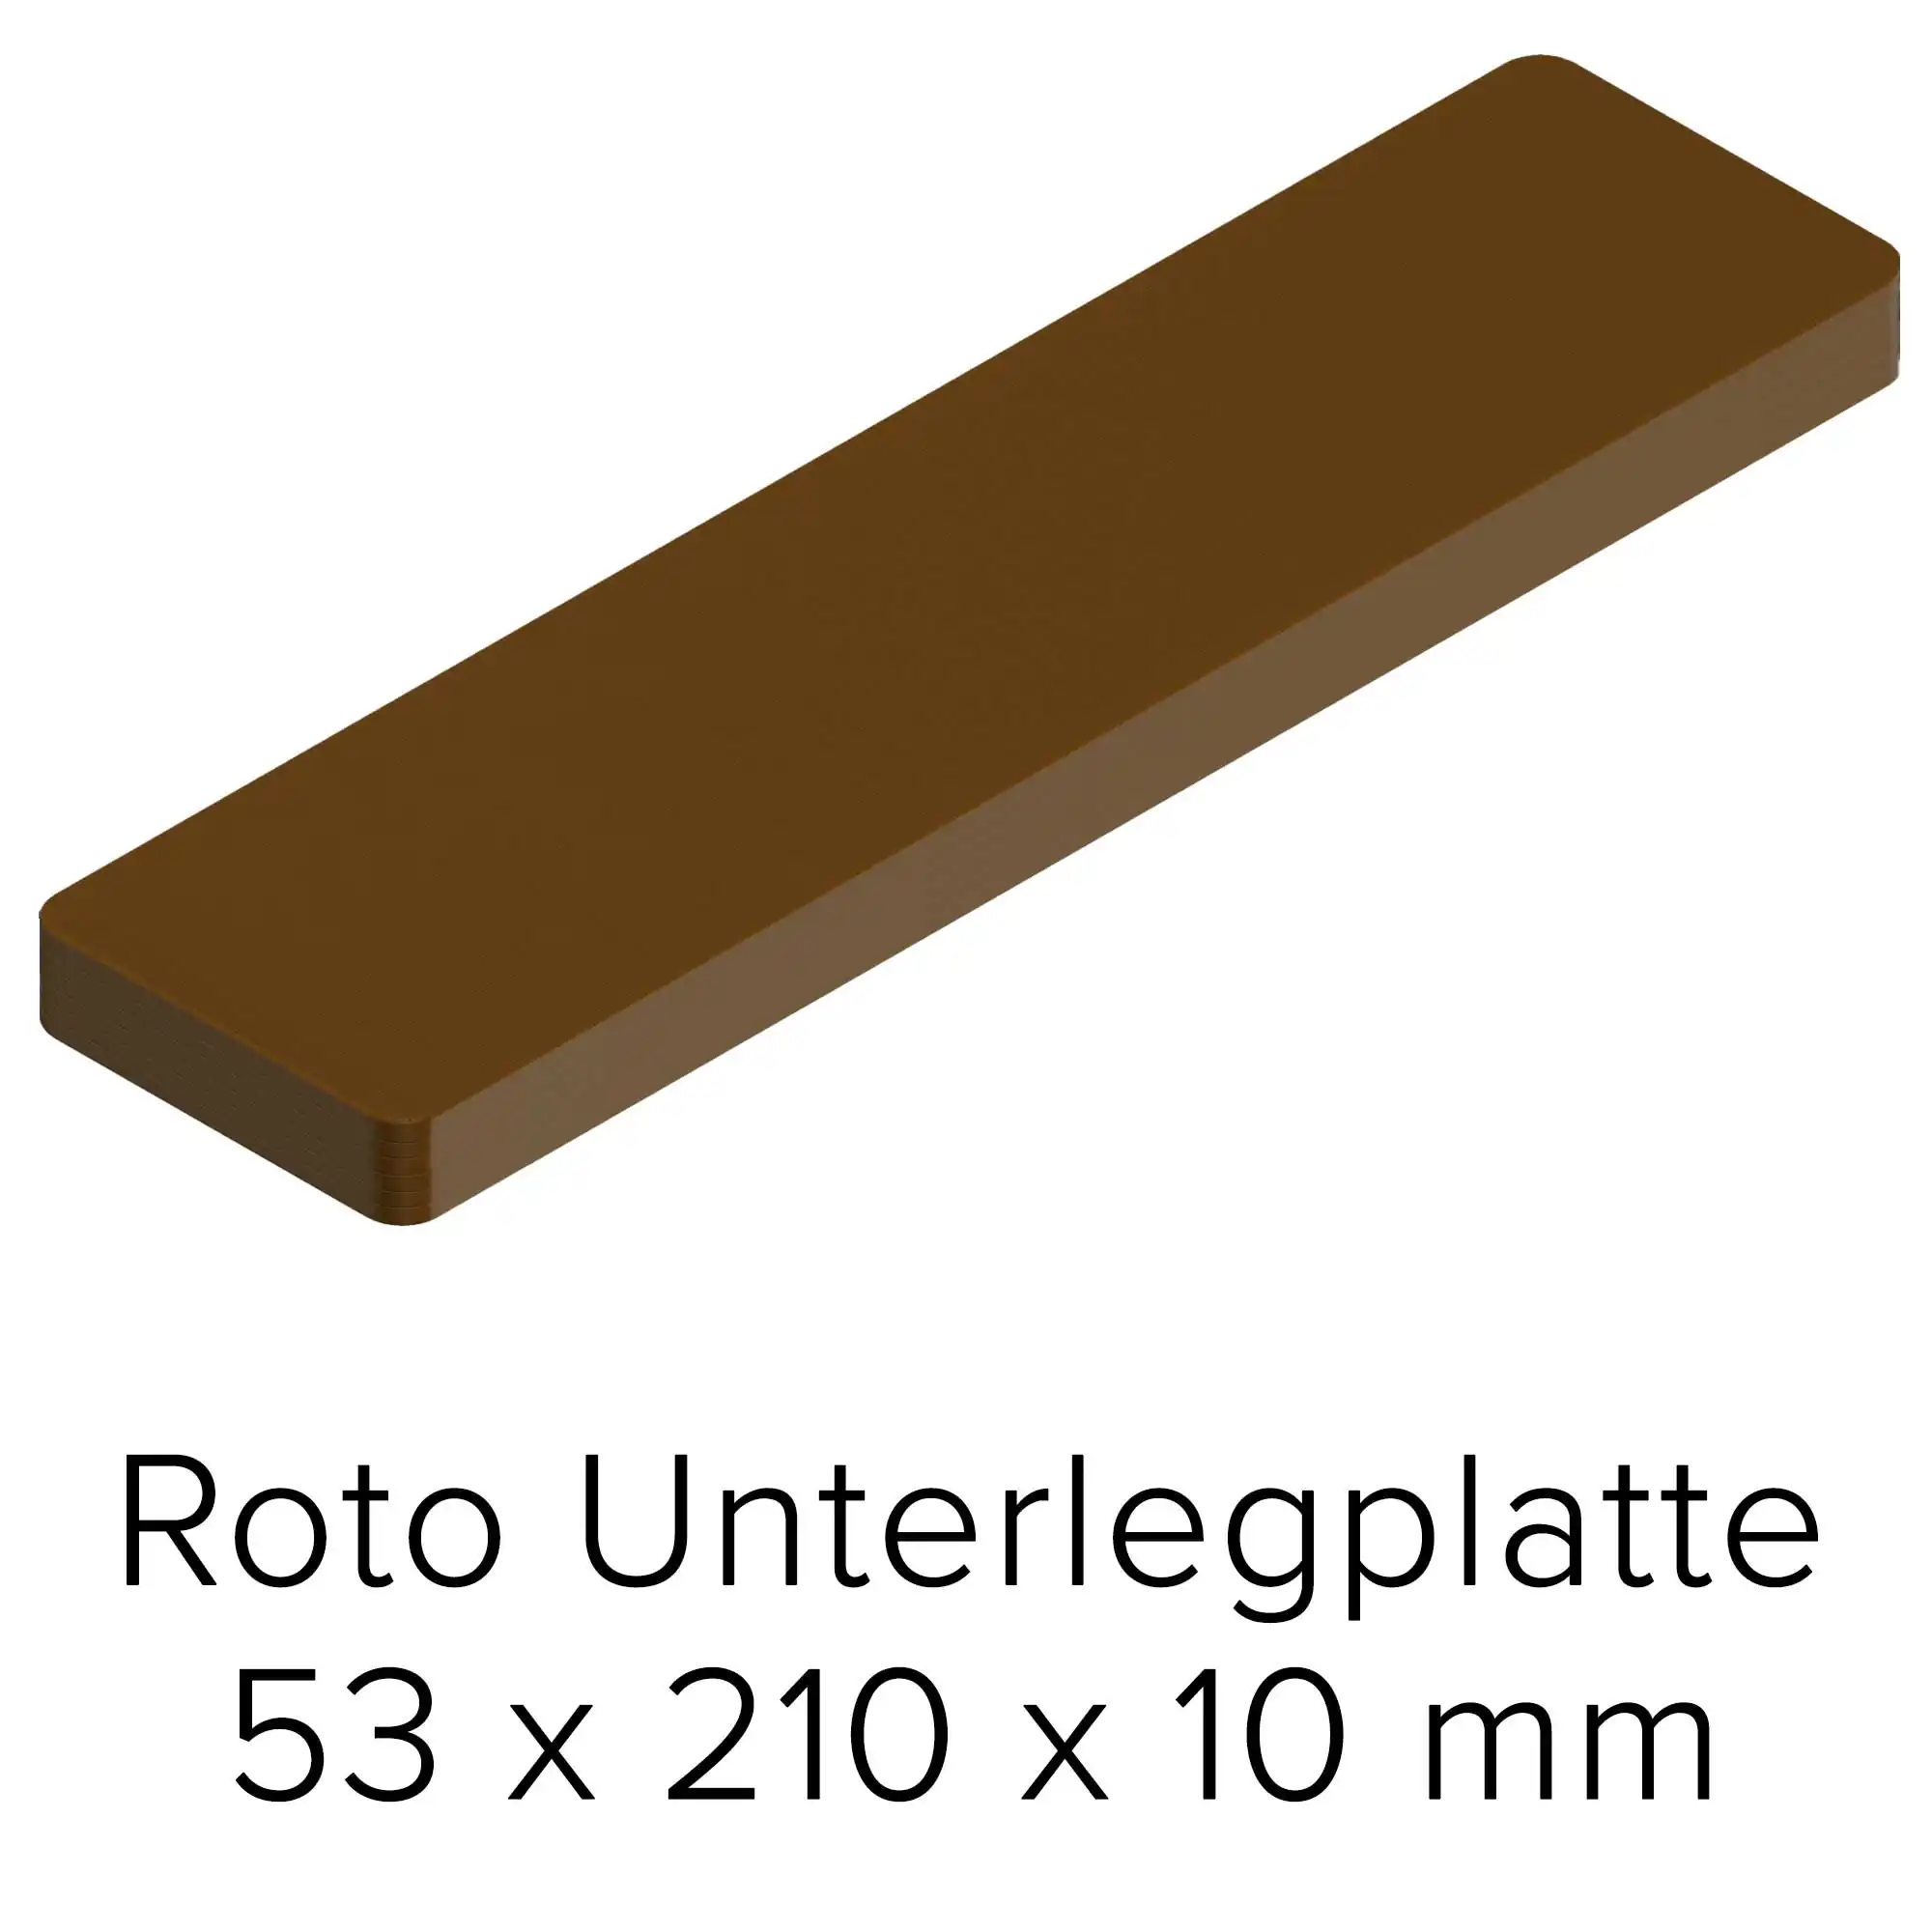 Roto Unterlegplatte 53 x 210 x 10 mm